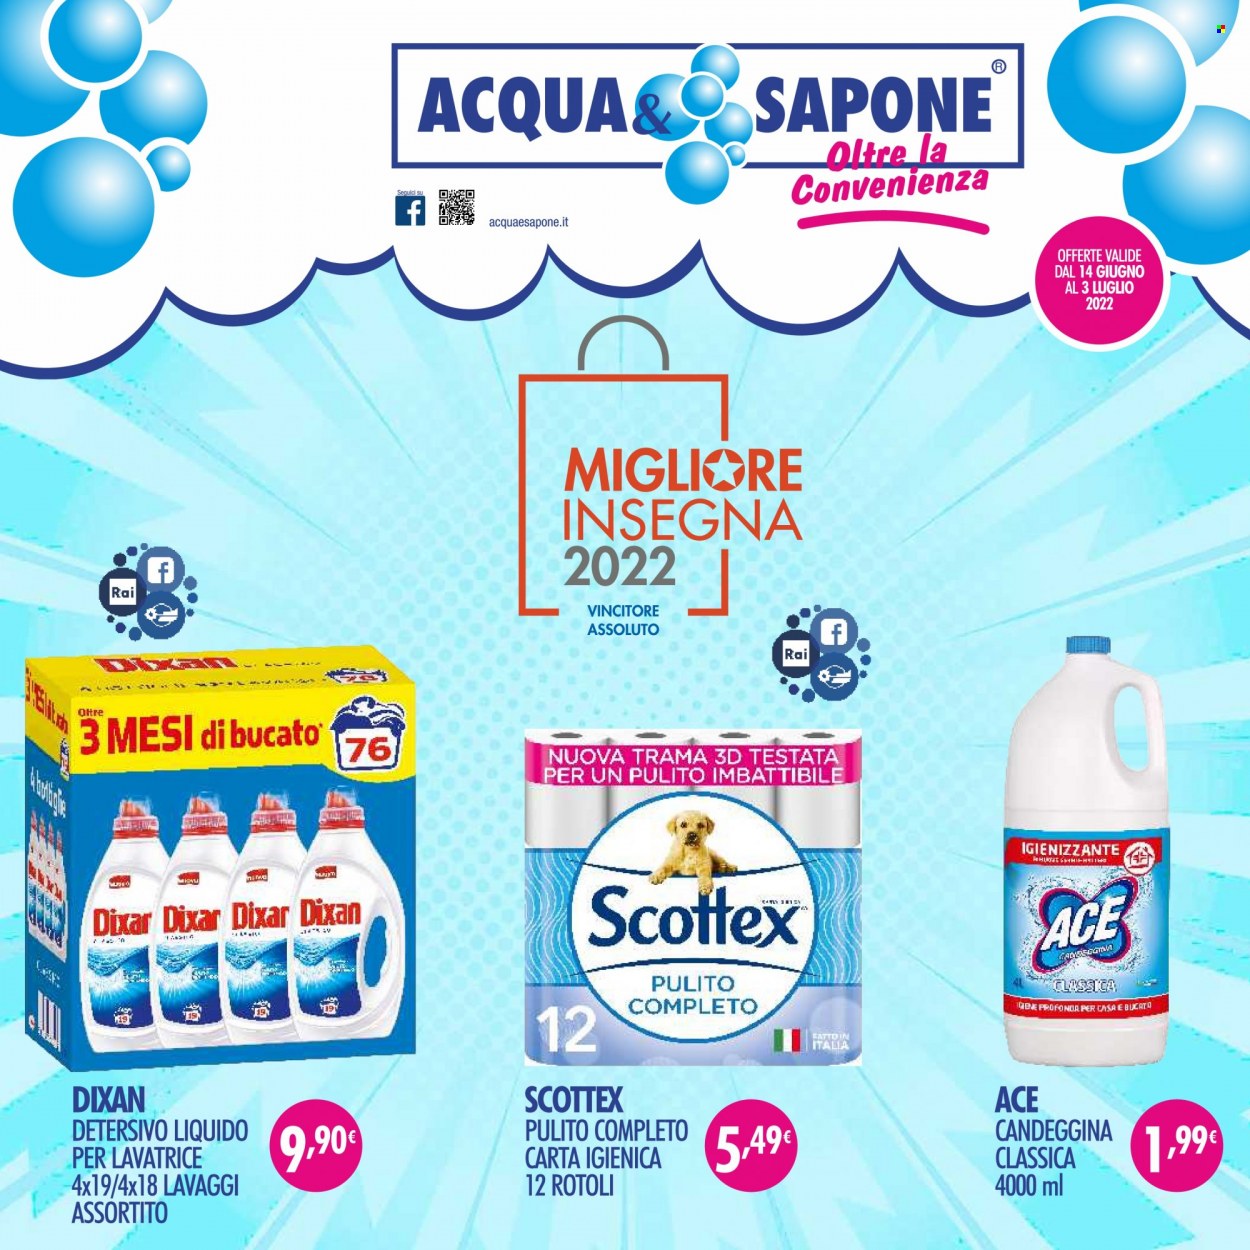 thumbnail - Volantino Acqua & Sapone - 14/6/2022 - 3/7/2022 - Prodotti in offerta - carta igienica, Scottex, Ace, Dixan, detersivo liquido per lavatrice, sapone. Pagina 1.